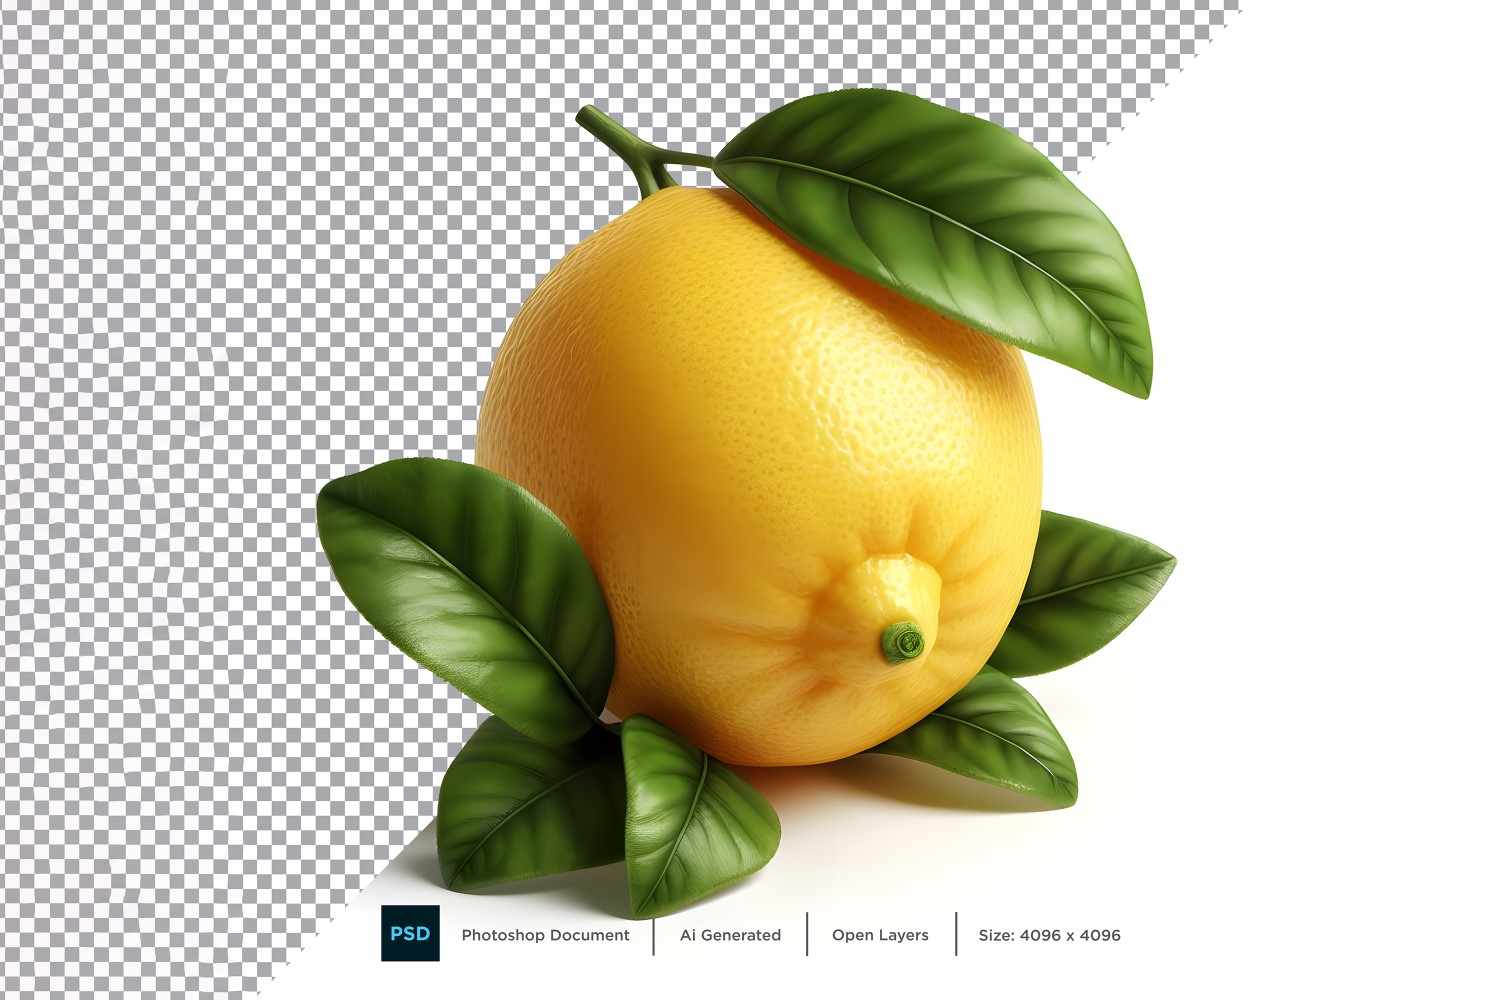 Lemon Fresh fruit isolated on white background 1